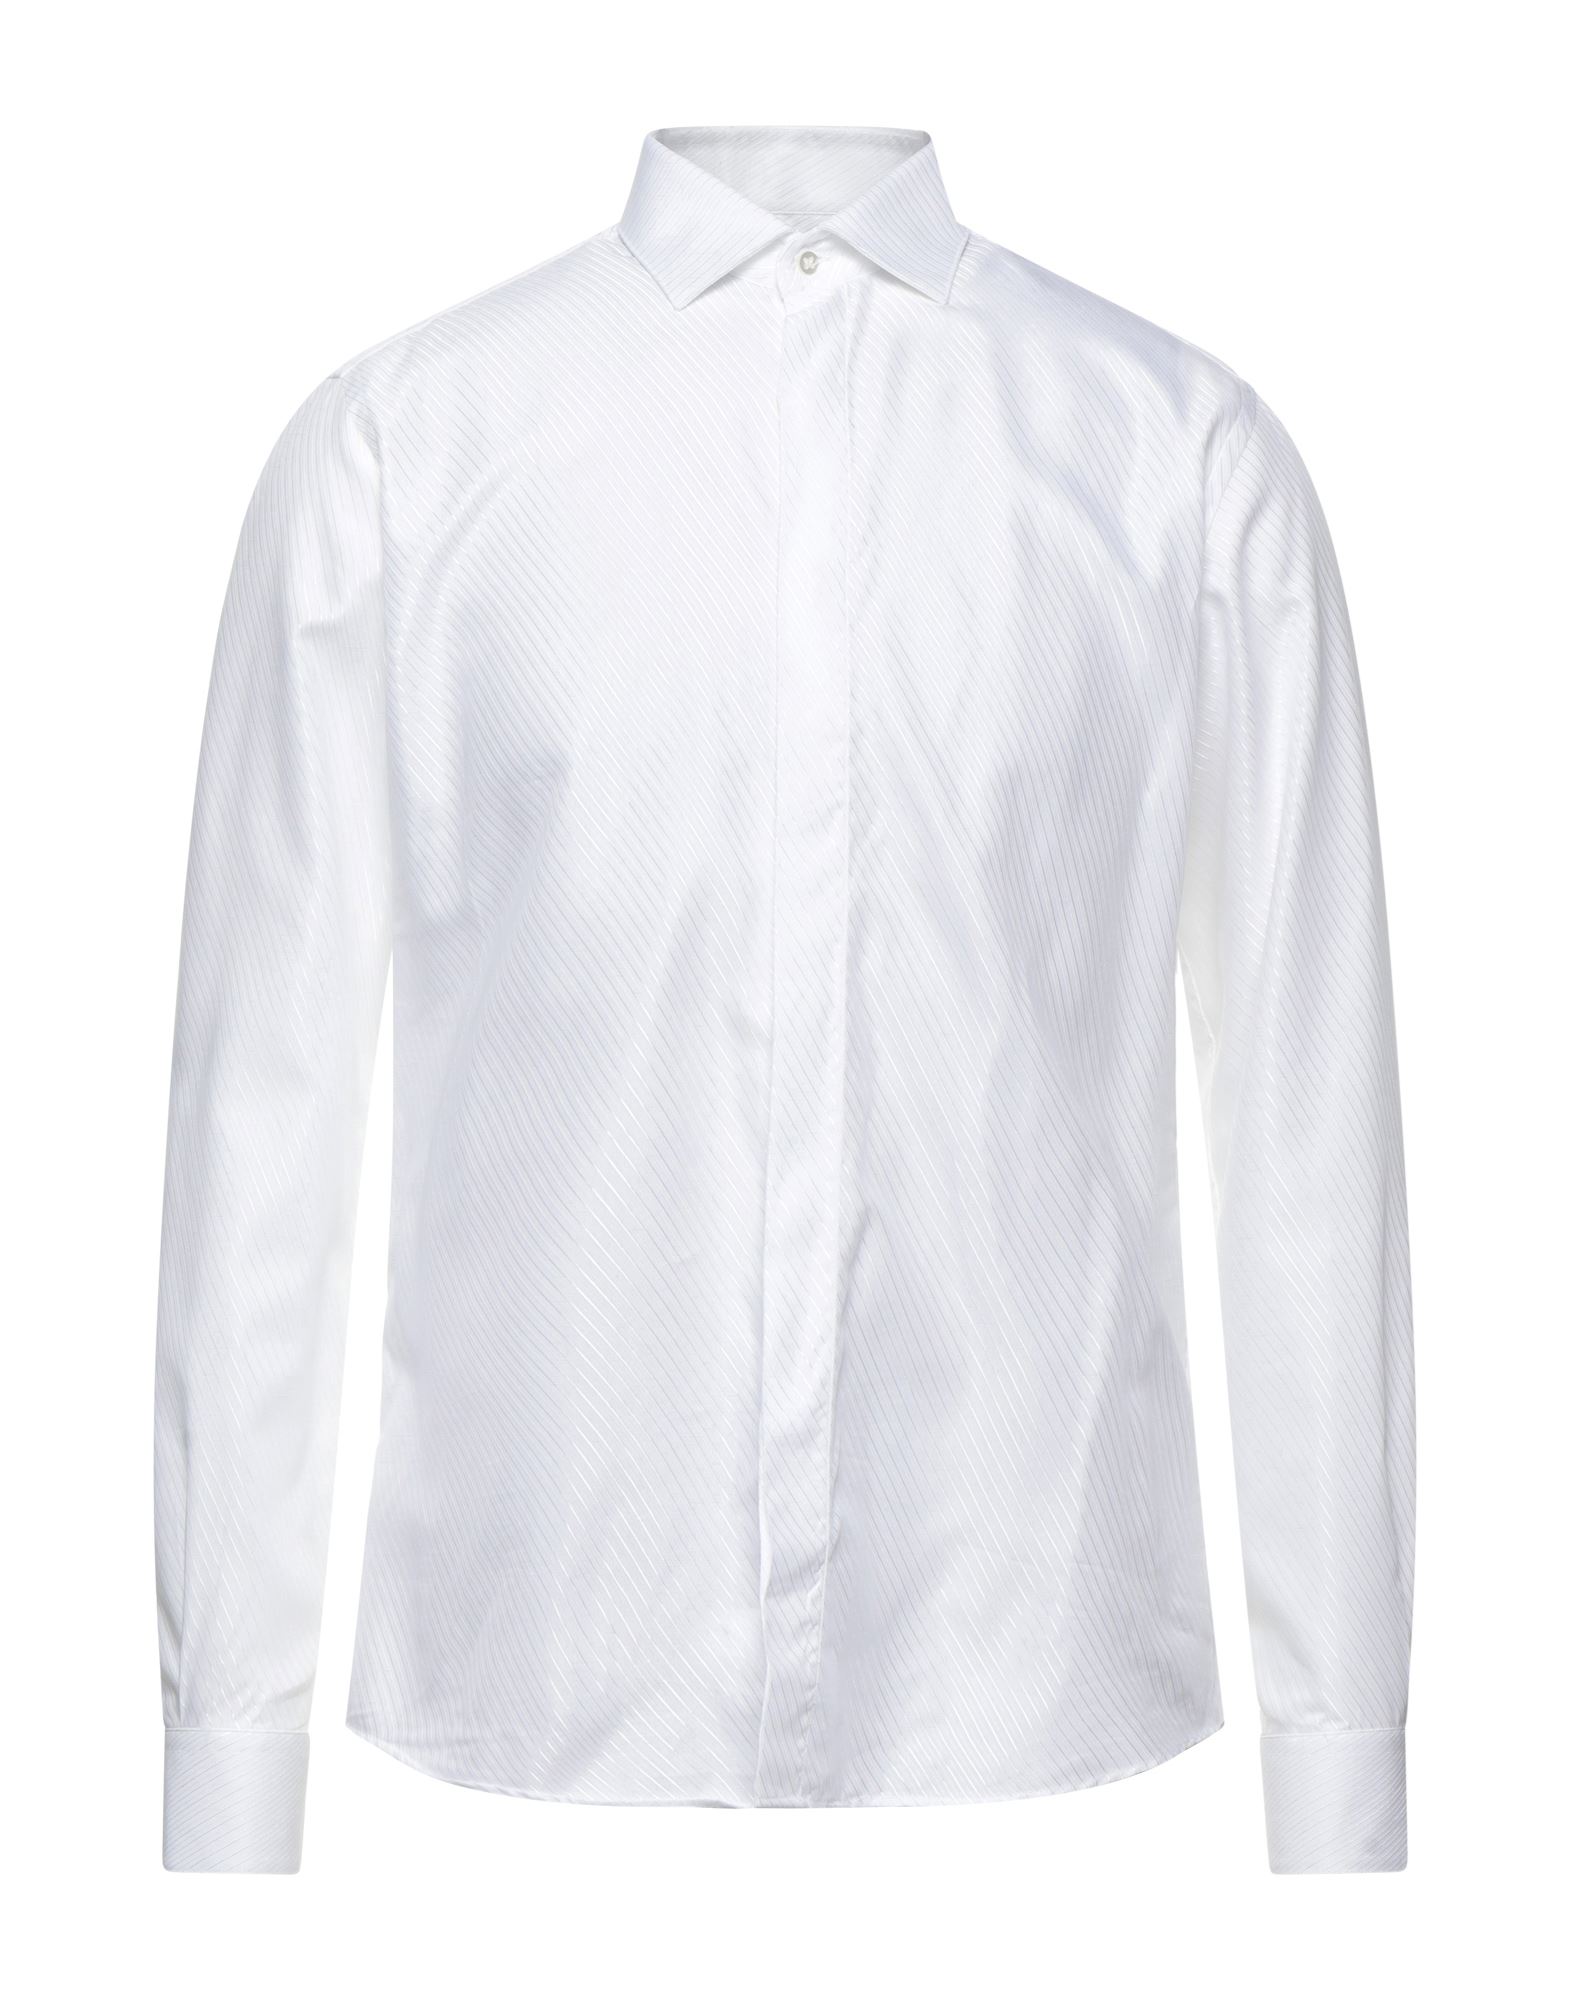 Ingram Shirts In White